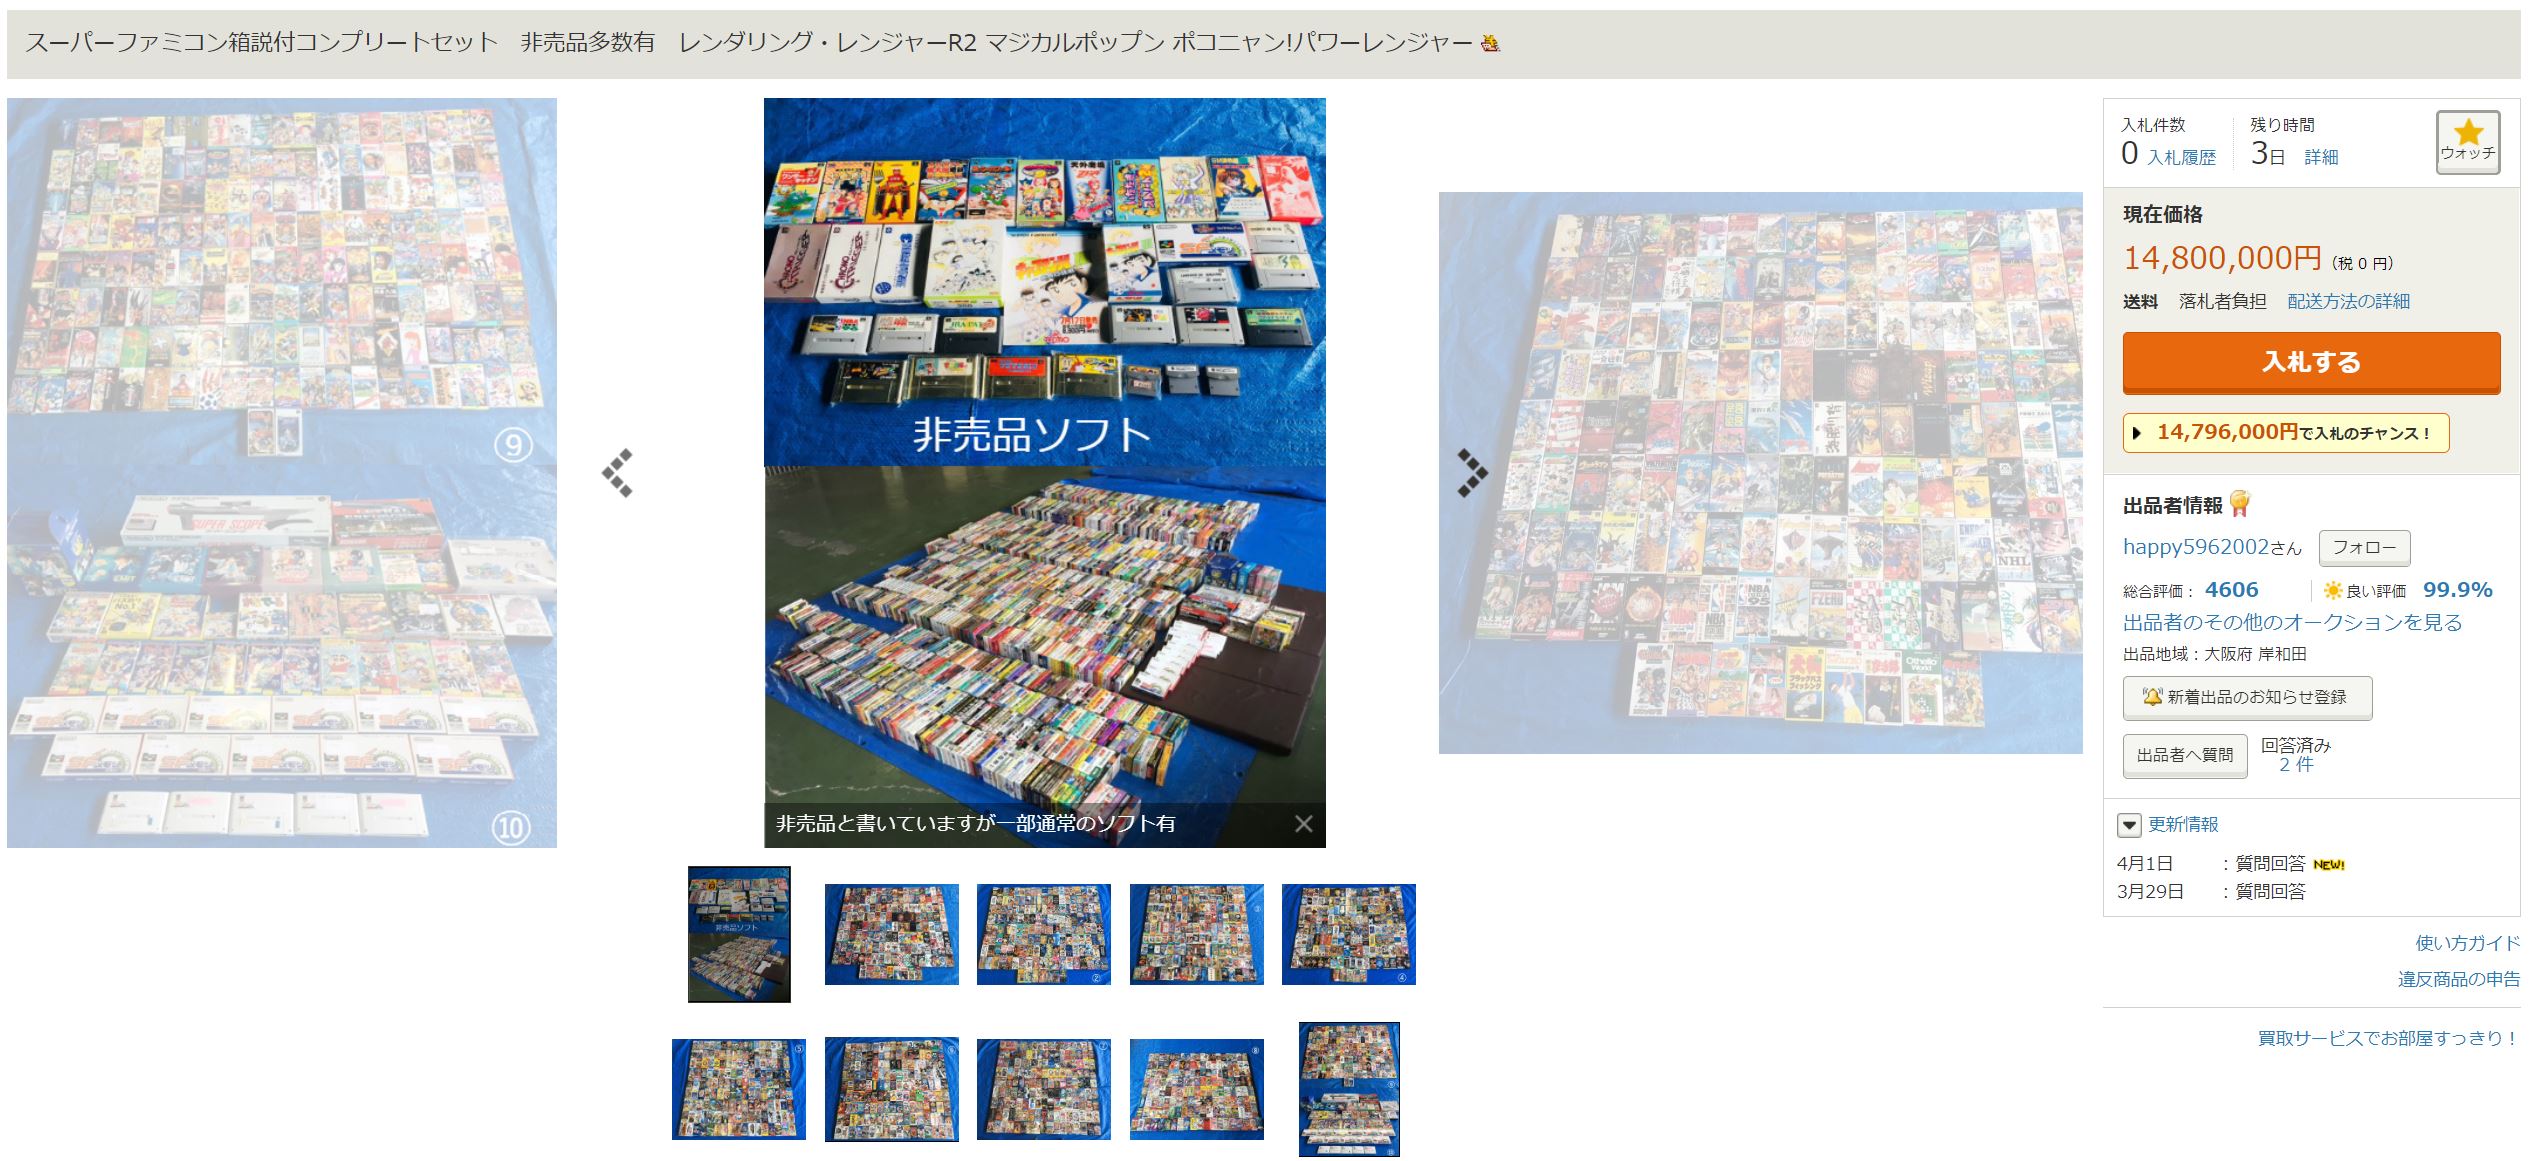 1000本以上のスーパーファミコン用ゲーム、ヤフオクで「1480万円」から ...